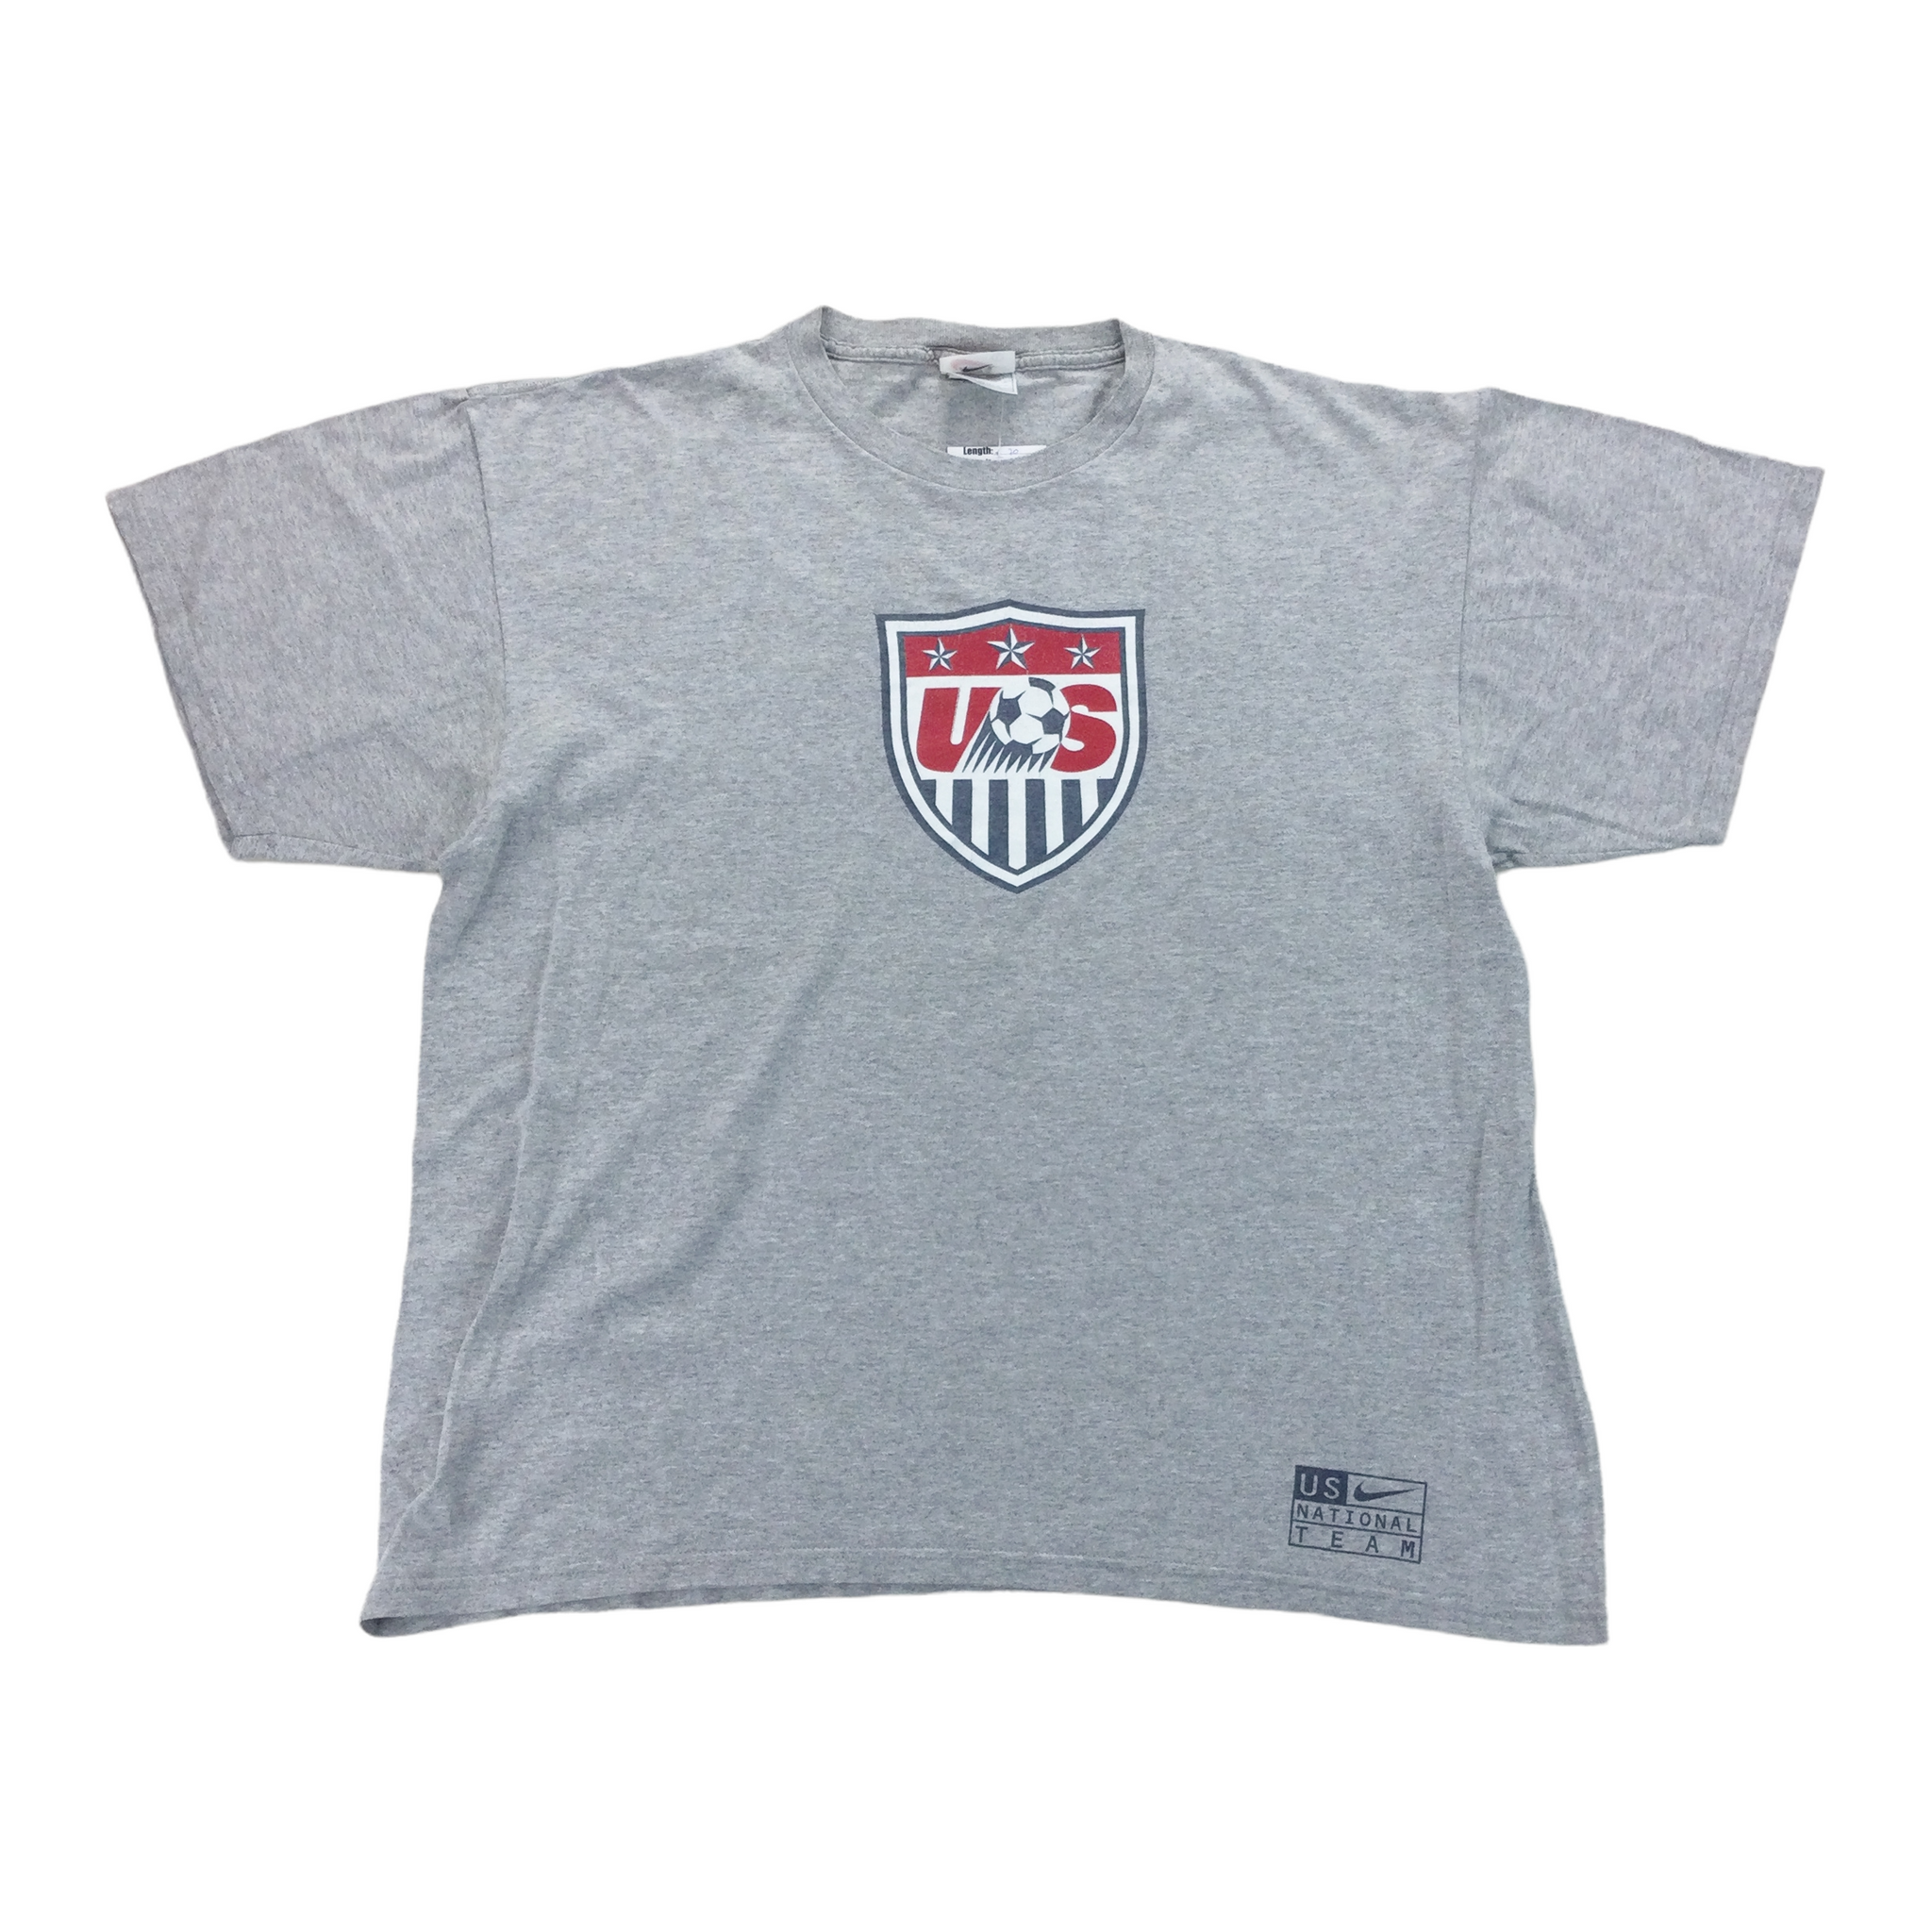 Nike US Football Team T Shirt   Large   OLESSTORE VINTAGE